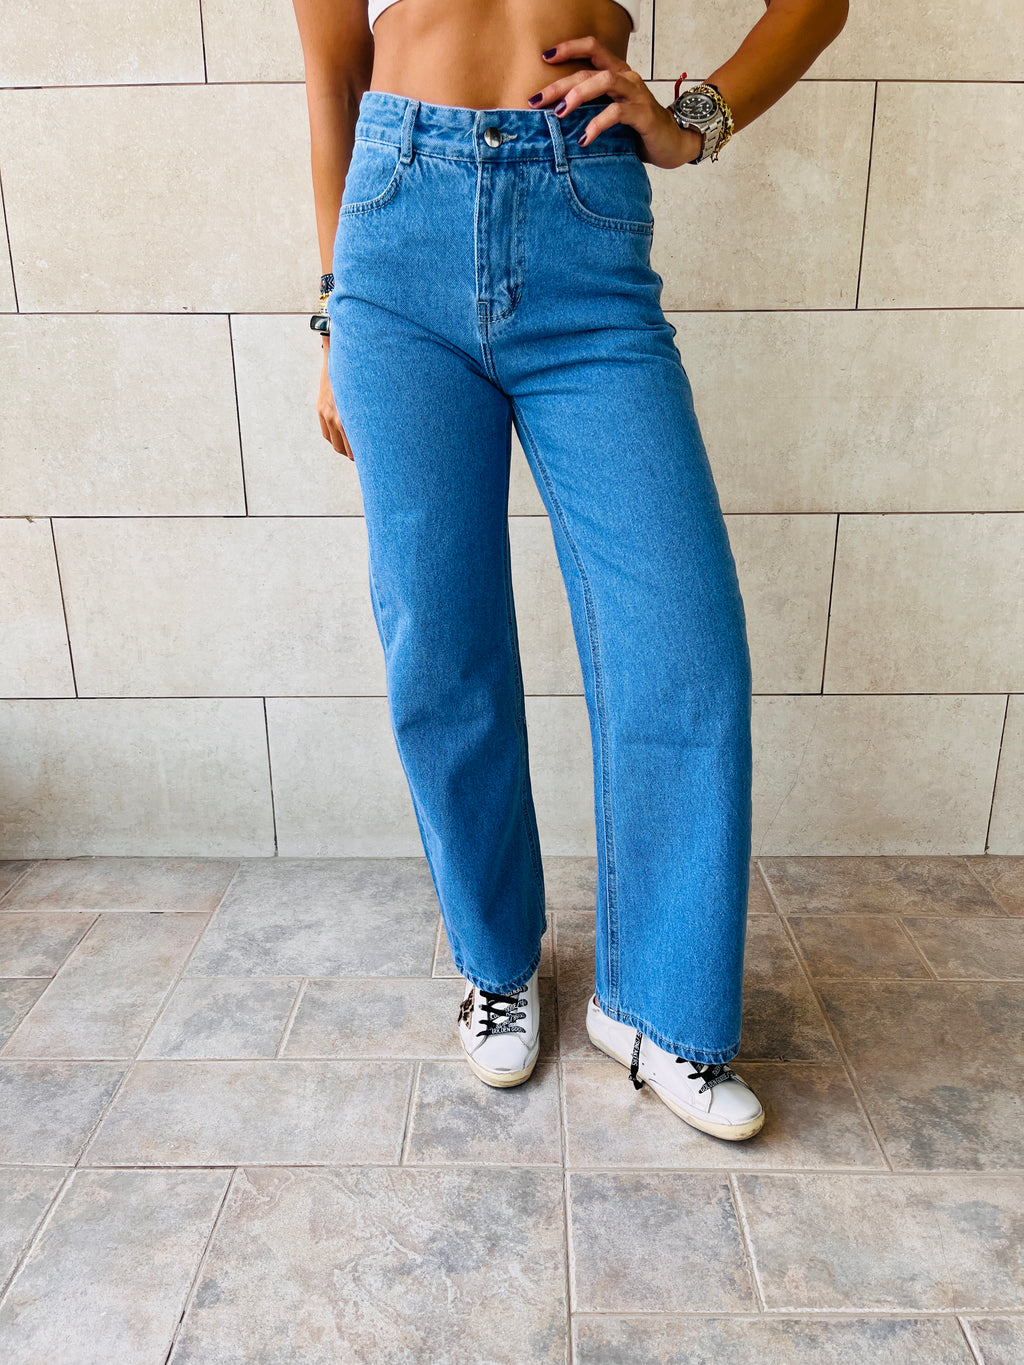 Blue 90's Cut Jeans